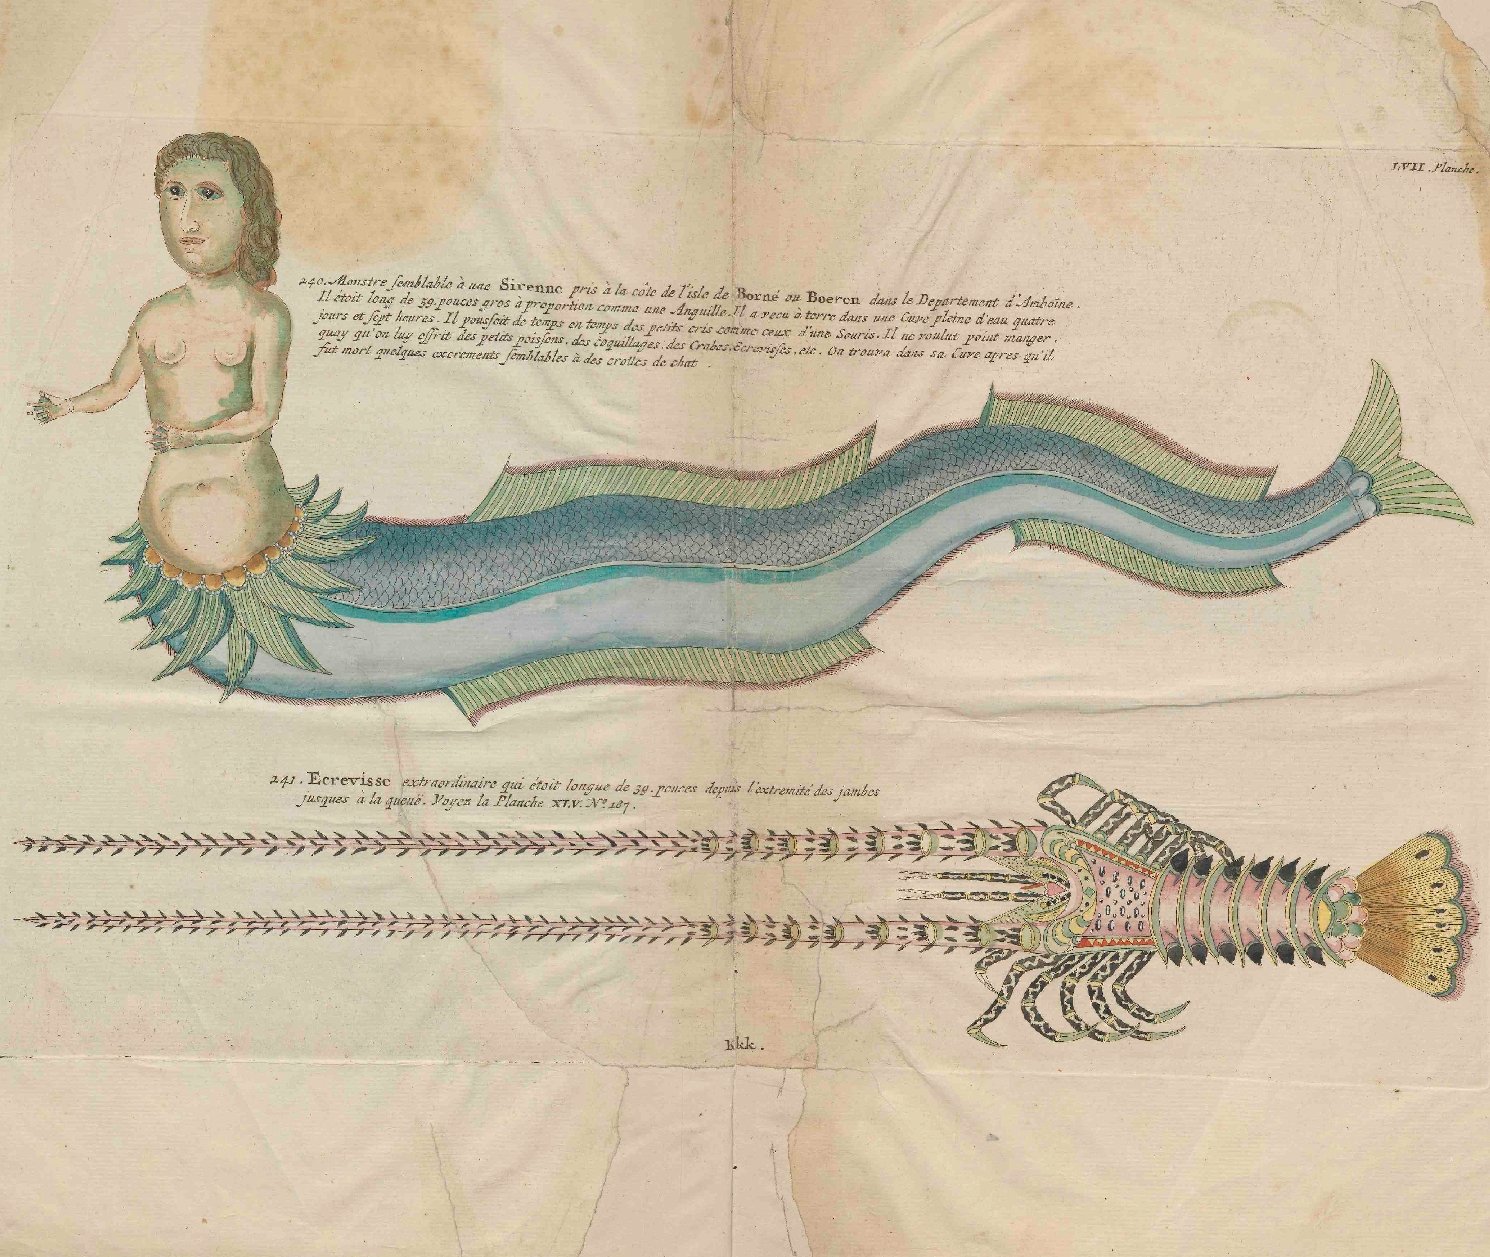 Illustratie van een zeemeermin in Renards 'Natuurlyke Historie', 1782, topstuk uit de Bijzondere Collecties van de Universiteitsbibliotheek Utrecht